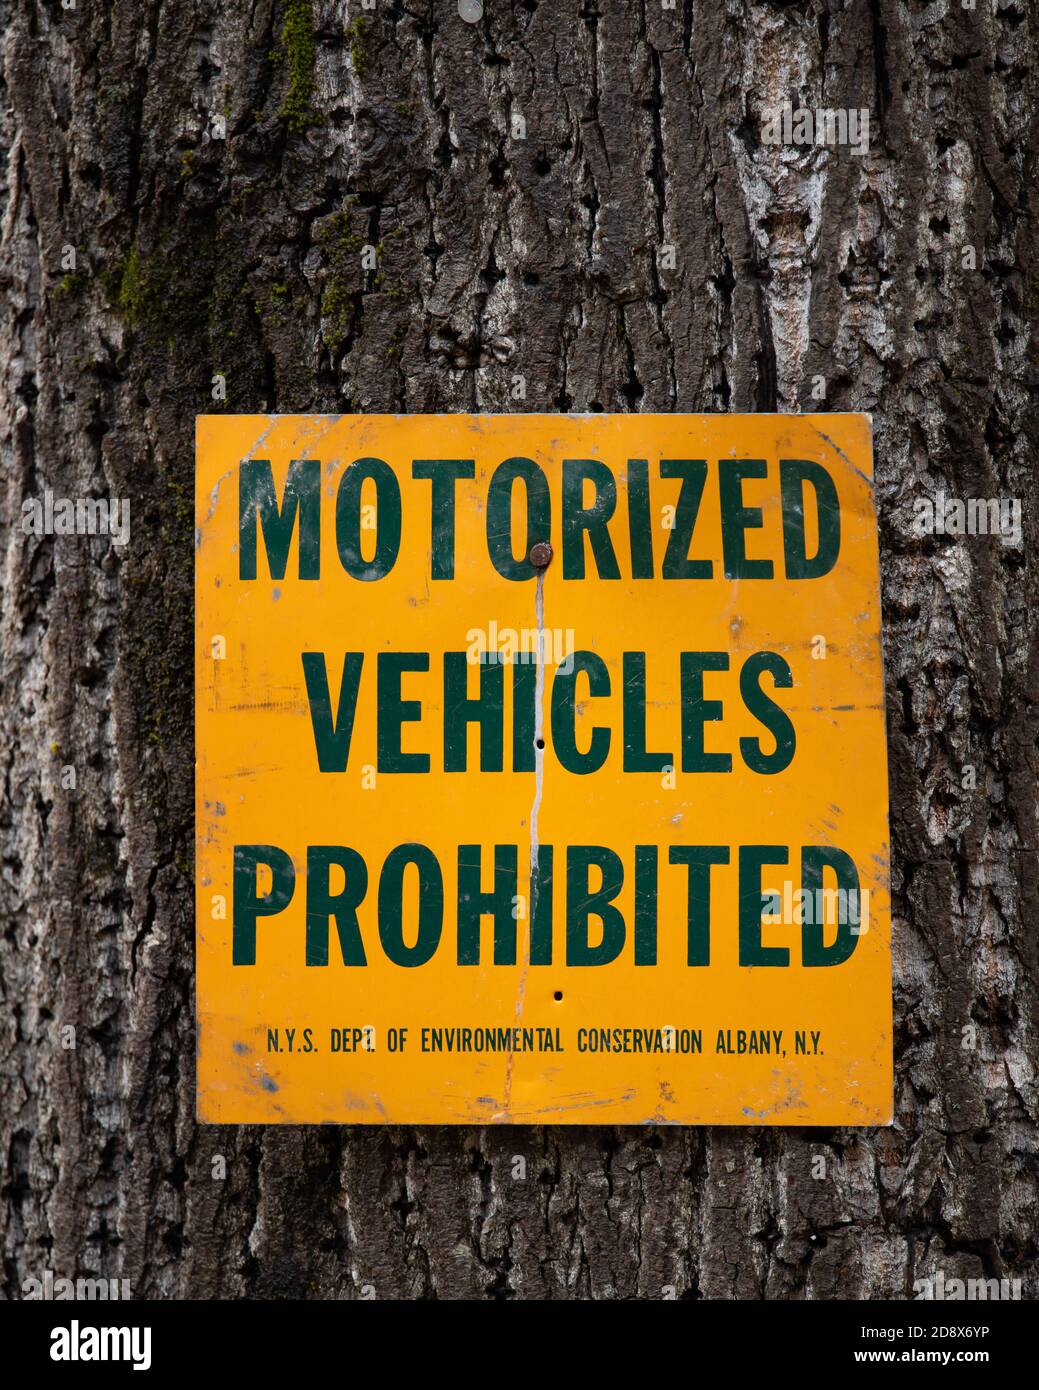 Un vieux panneau vert et or dans l'Adirondack Park, NY USA, indiquant que les véhicules motorisés sont interdits dans cette zone. Banque D'Images